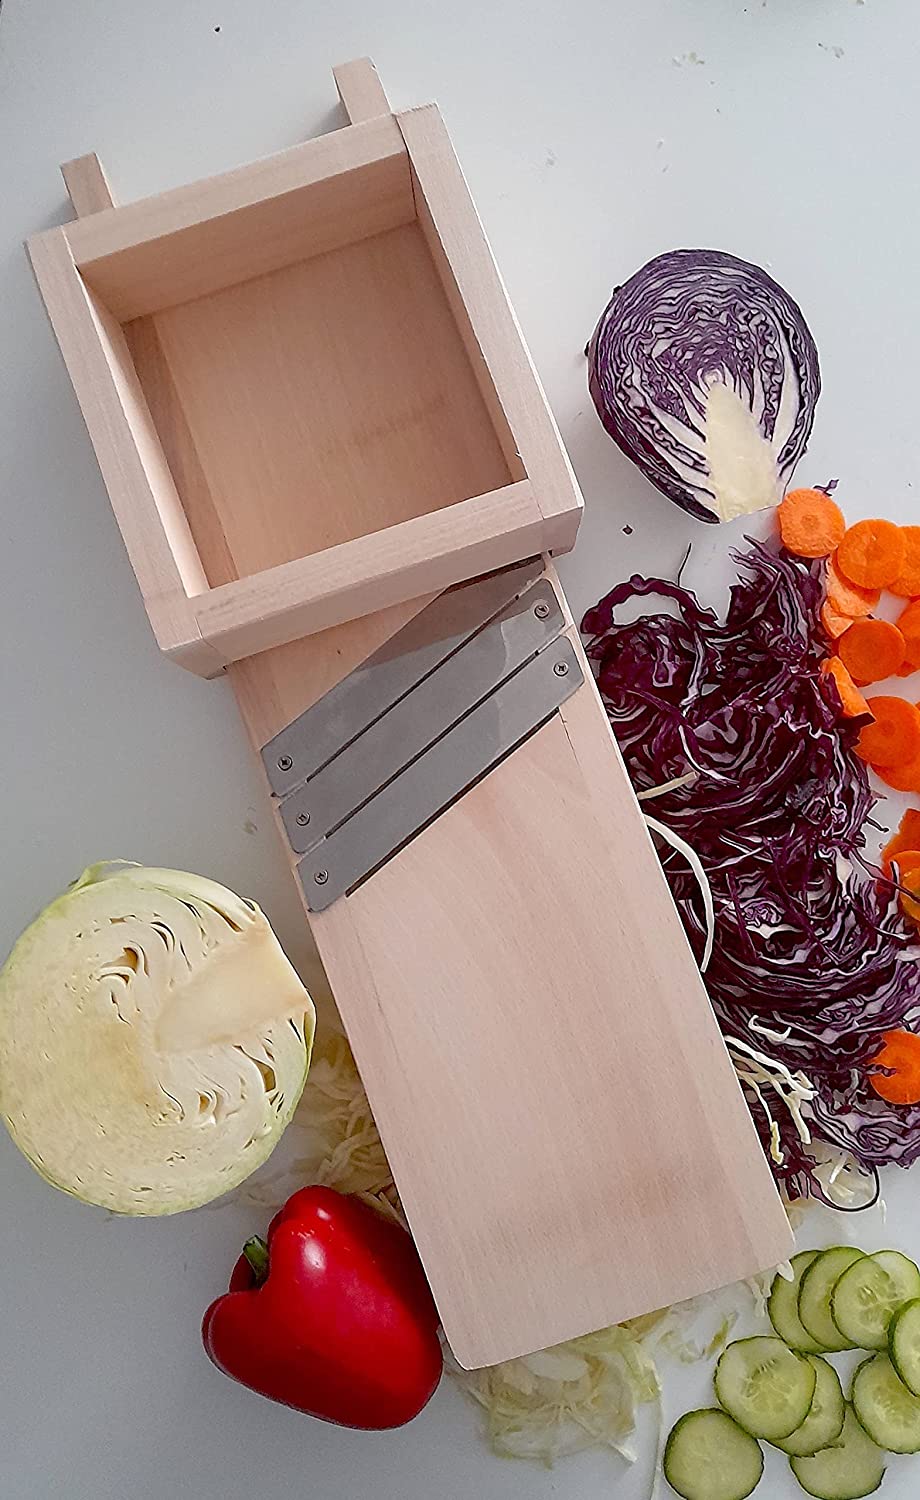 Cabbage Shredder, Vegetable Slicer for Sauerkraut, Salads, Coleslaw - Flat Surface Model